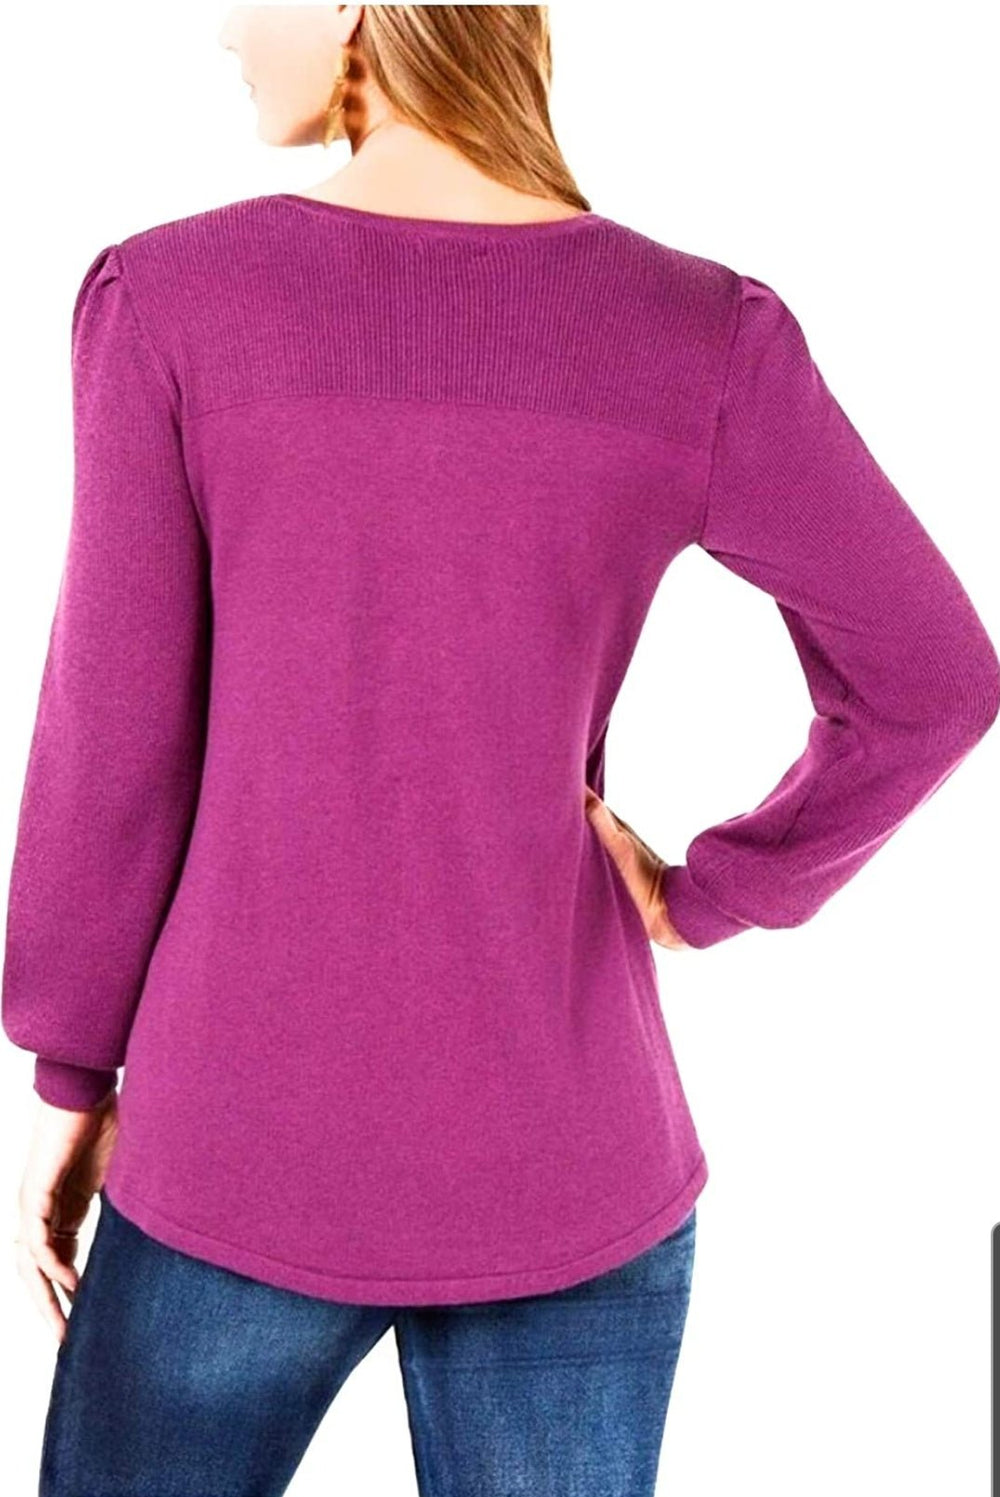 Style & Co. Petite - Suéter para mujer con cuello en V y hombros caídos, color morado - BELLEZA'S - Style & Co. Petite - Suéter para mujer con cuello en V y hombros caídos, color morado - BELLEZA'S - -